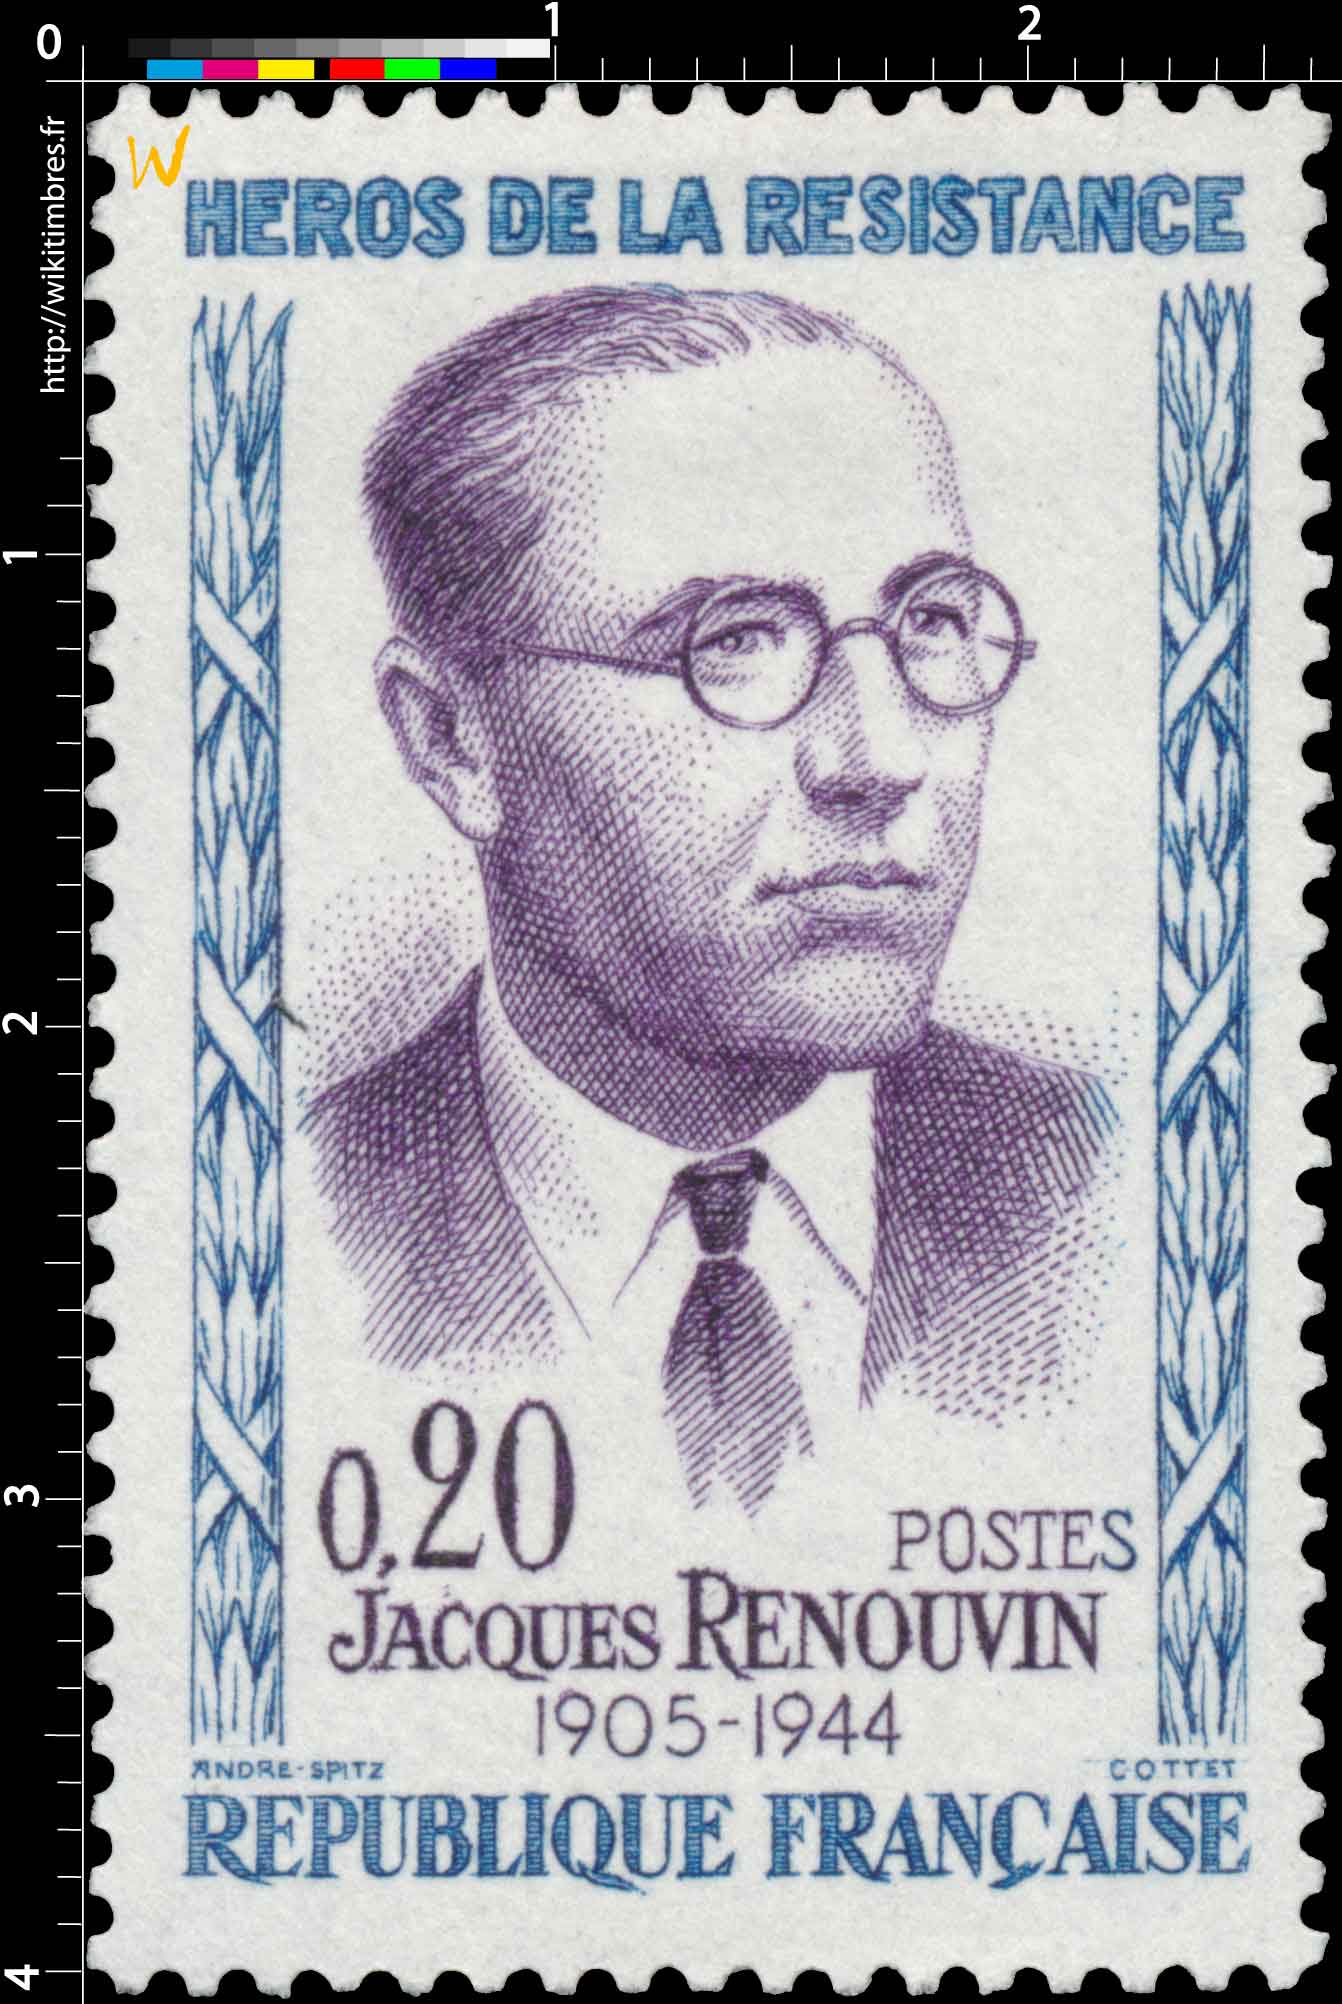 HÉROS DE LA RÉSISTANCE JACQUES RENOUVIN 1905-1944